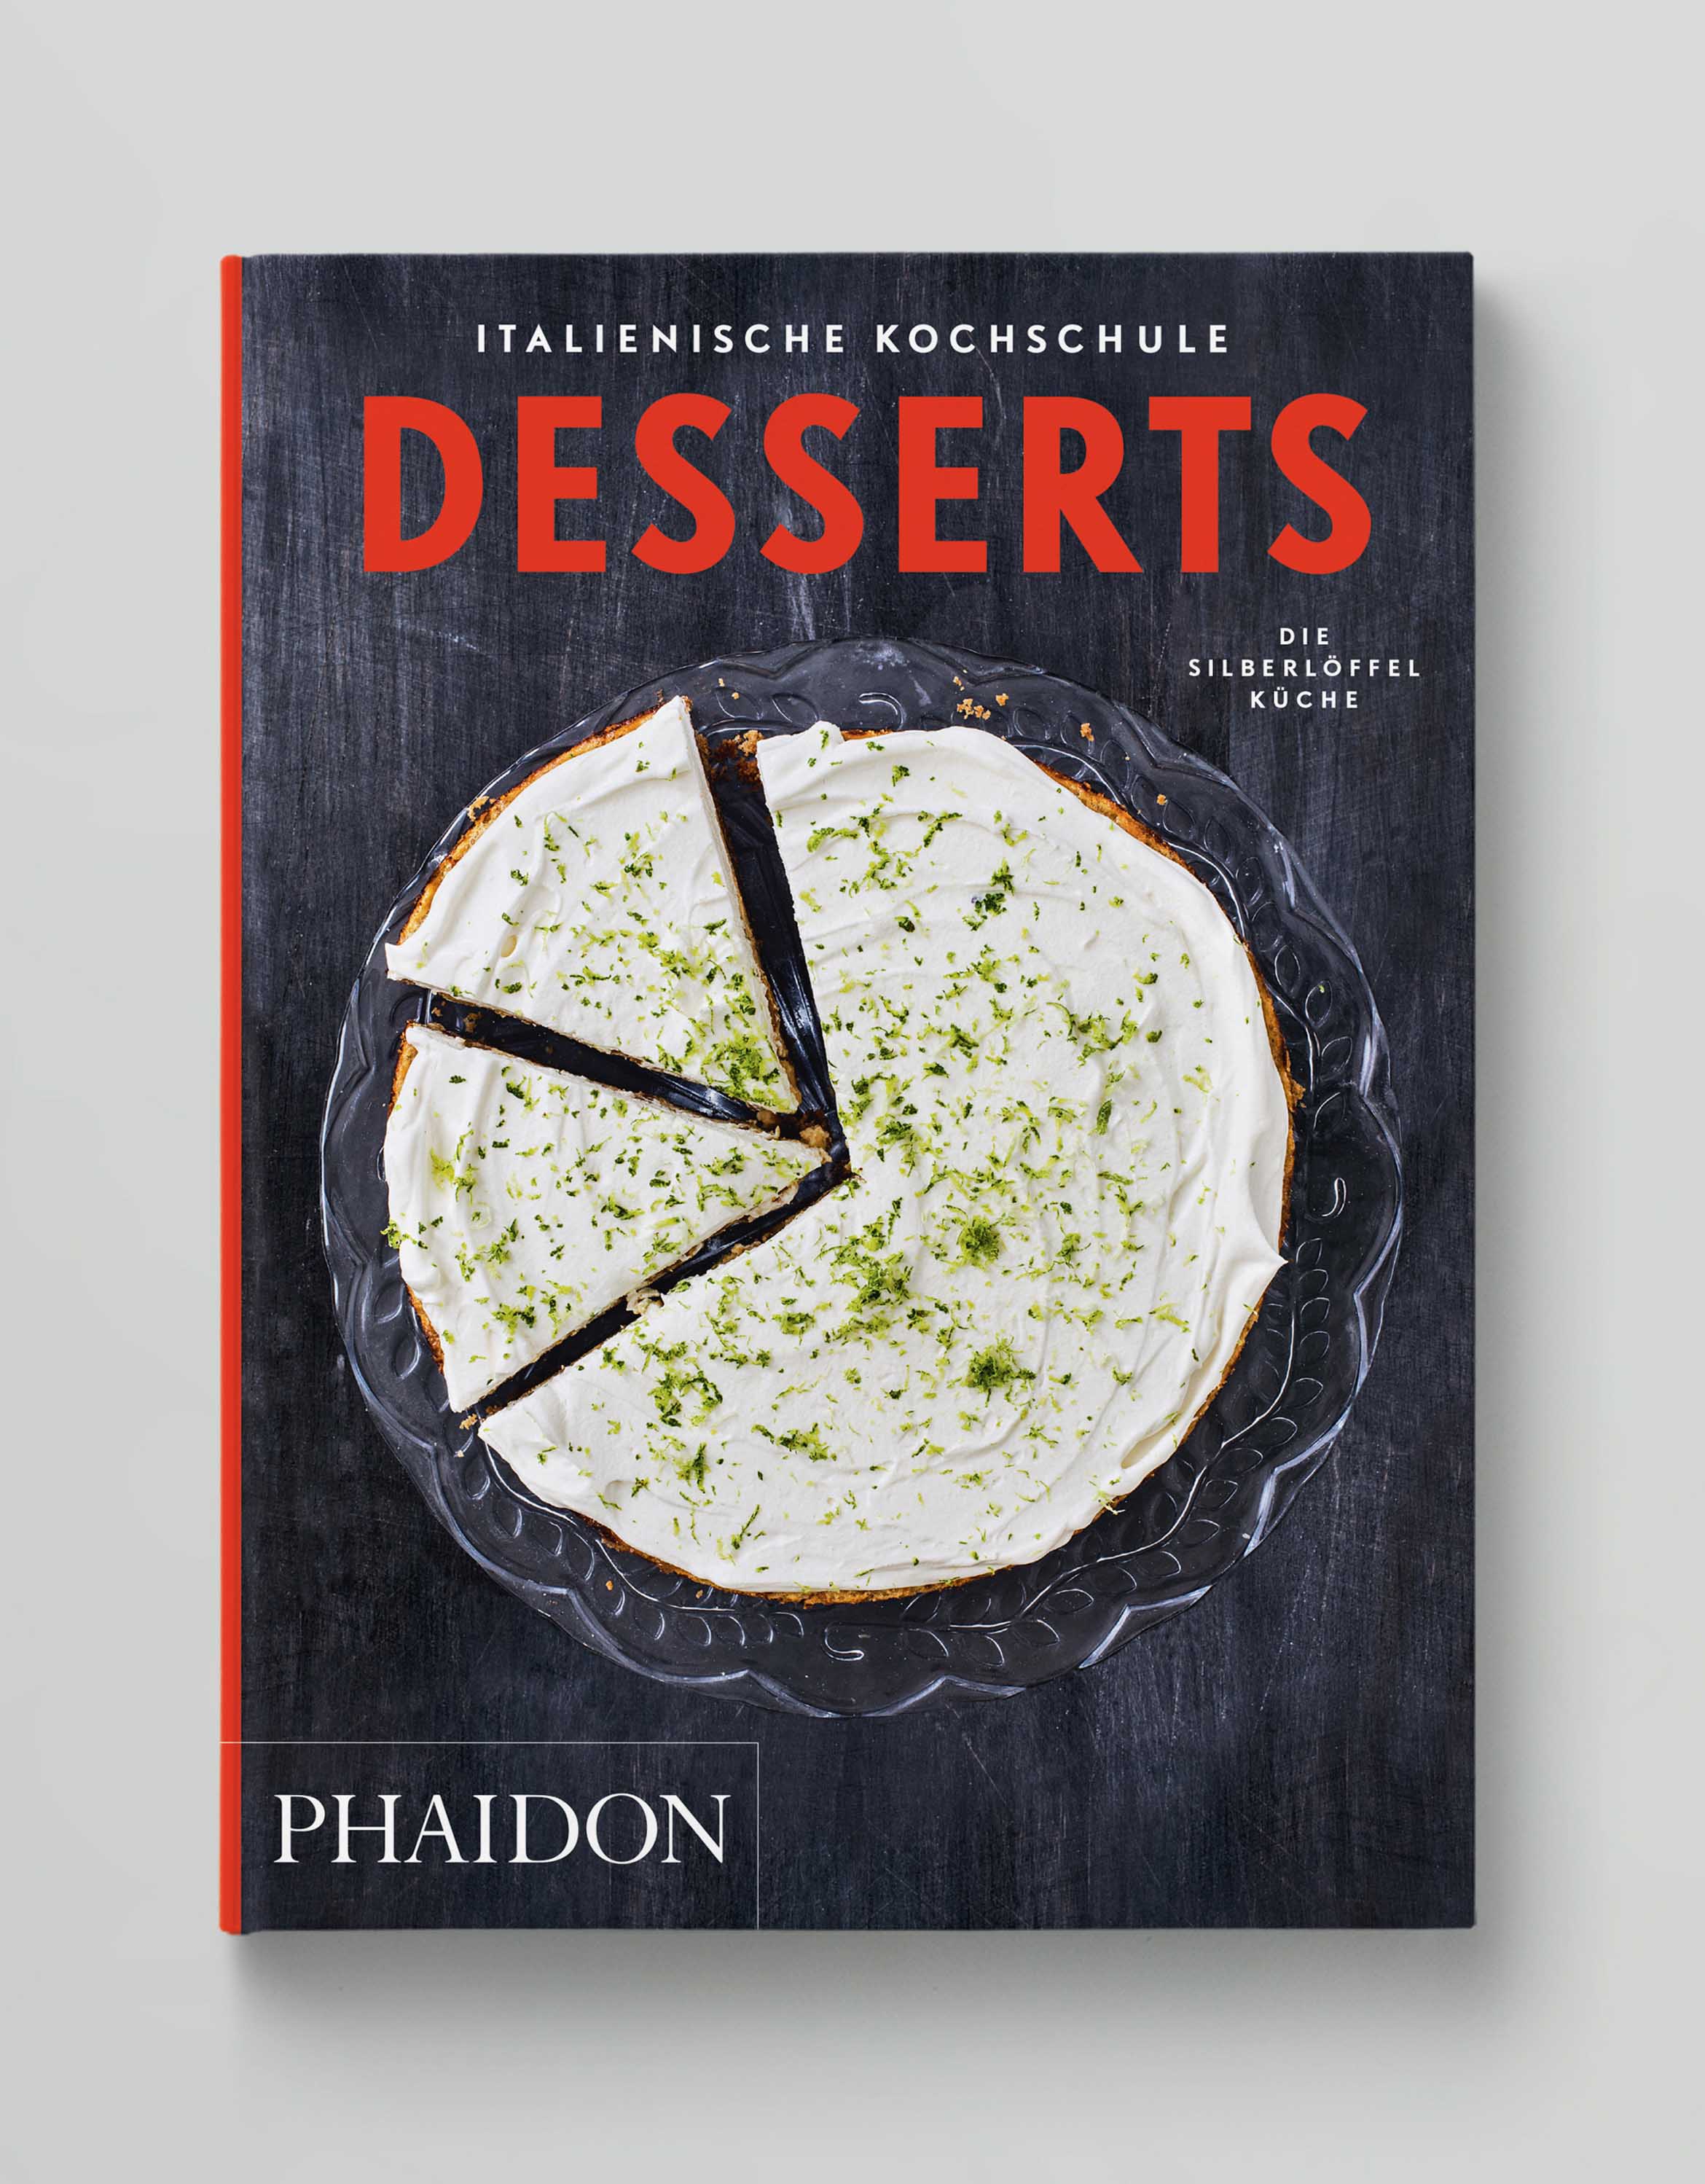 Italienische Kochschule Desserts Die Silberlöffel Küche Phaidon Cover